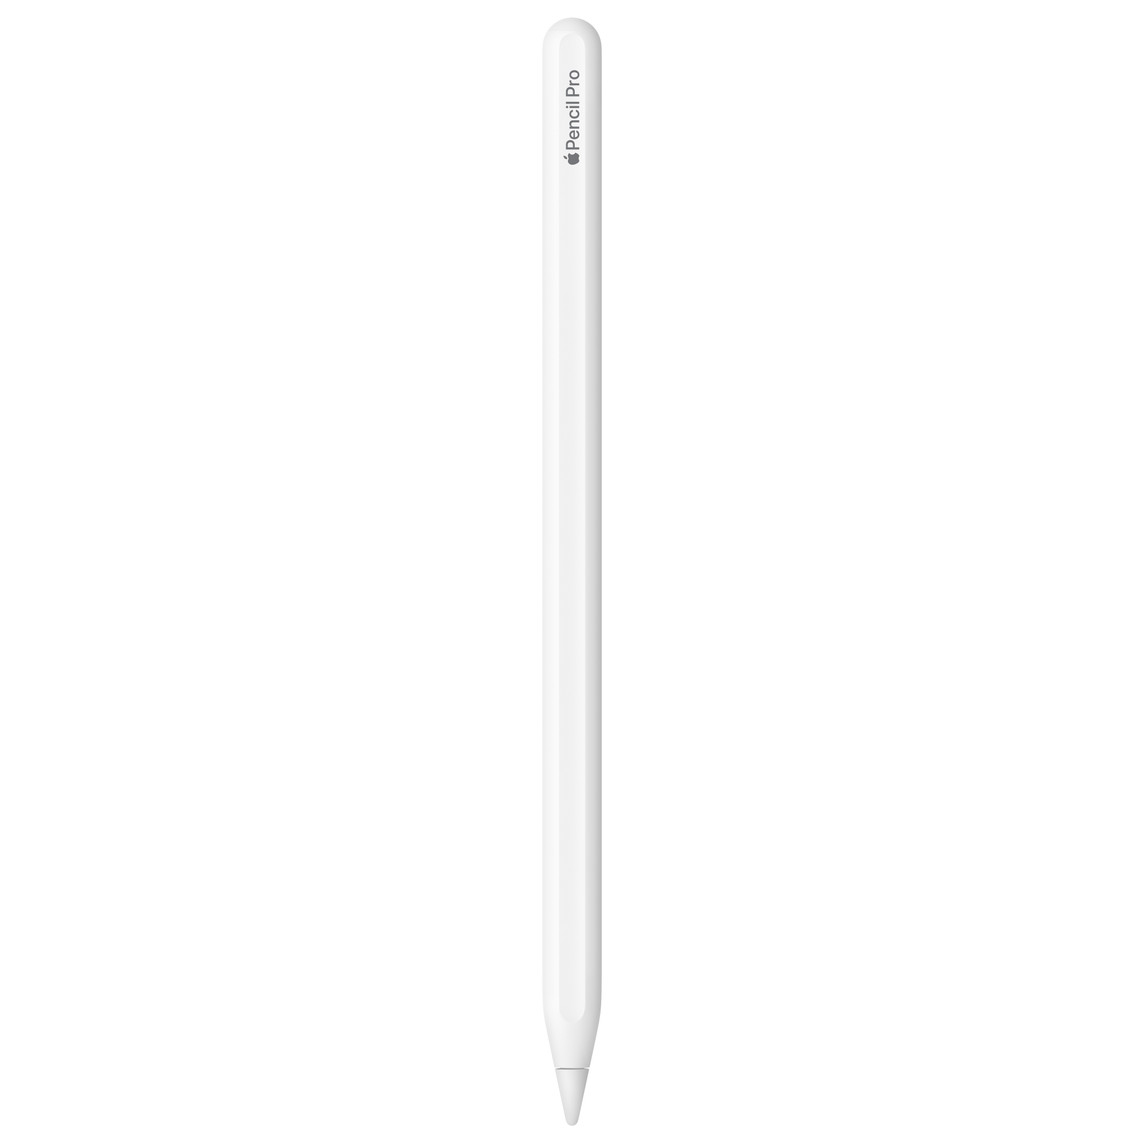 Apple Pencil Pro, fehér, gravírozás, Apple Pencil Pro felirat, az Apple szót az Apple logó helyettesíti